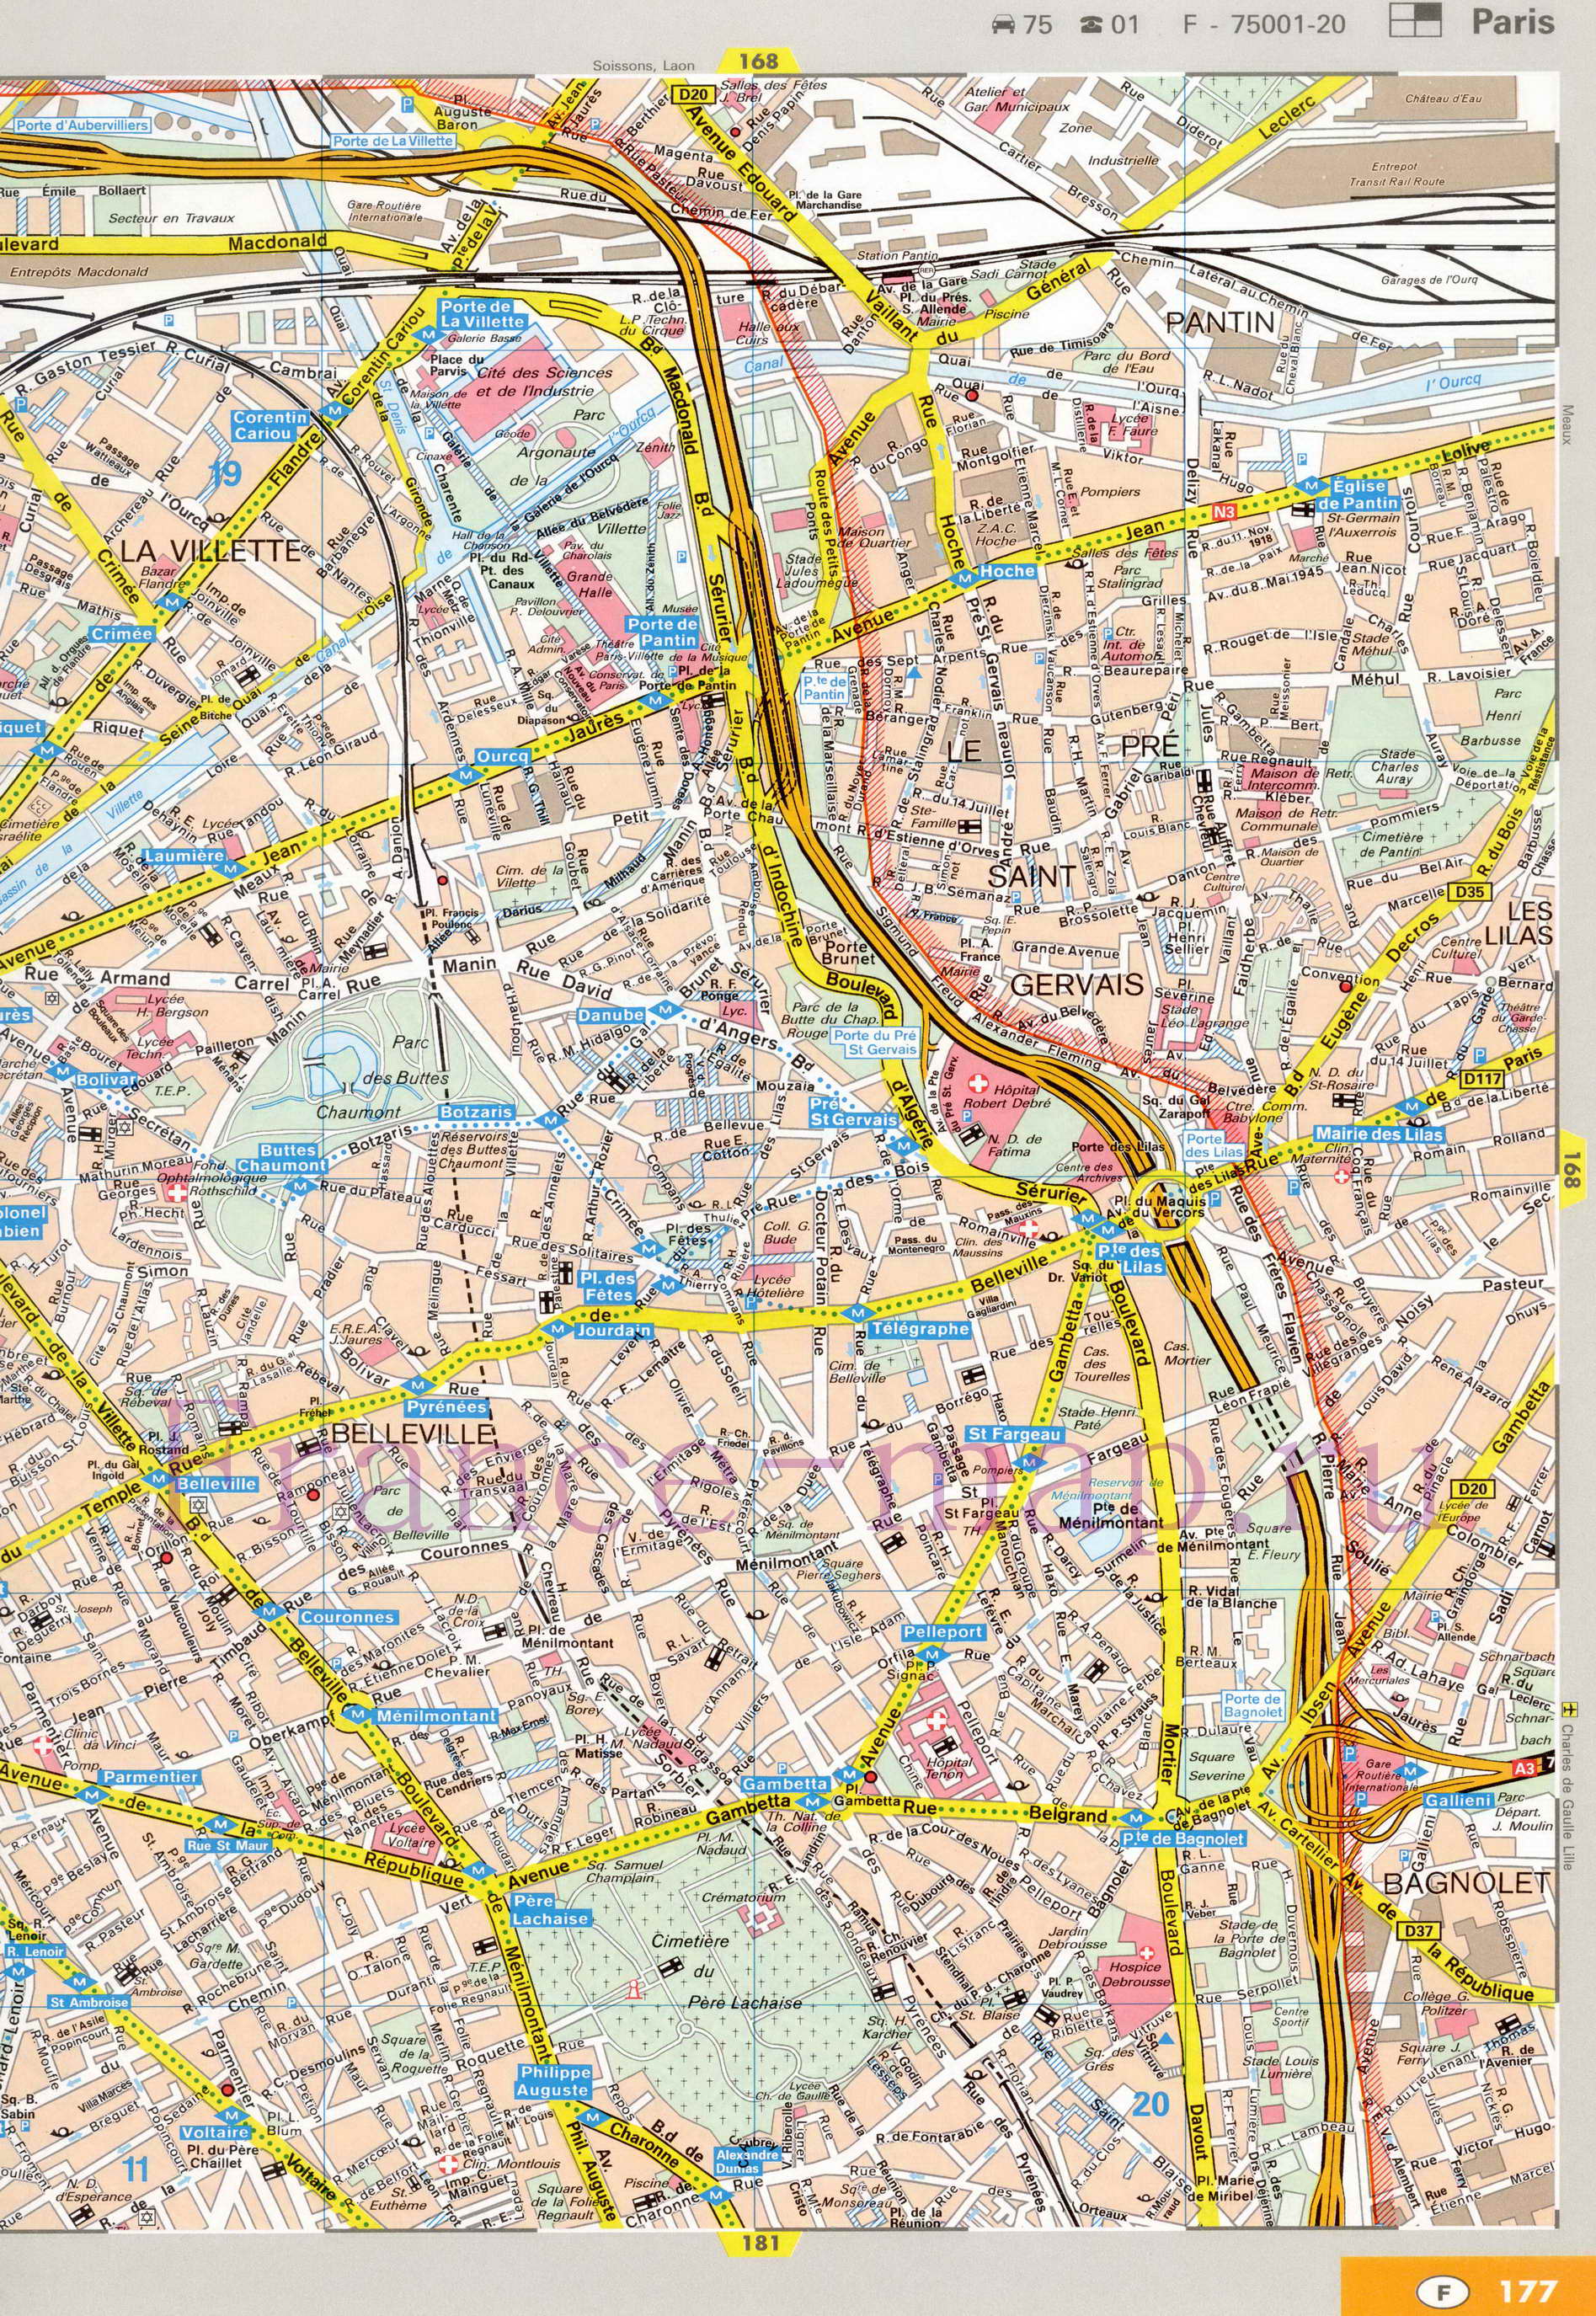 Карта улиц Парижа. Подробная карта Парижа с названиями улиц. Карта Парижа с улицами и достопримечательностями, D0 - 